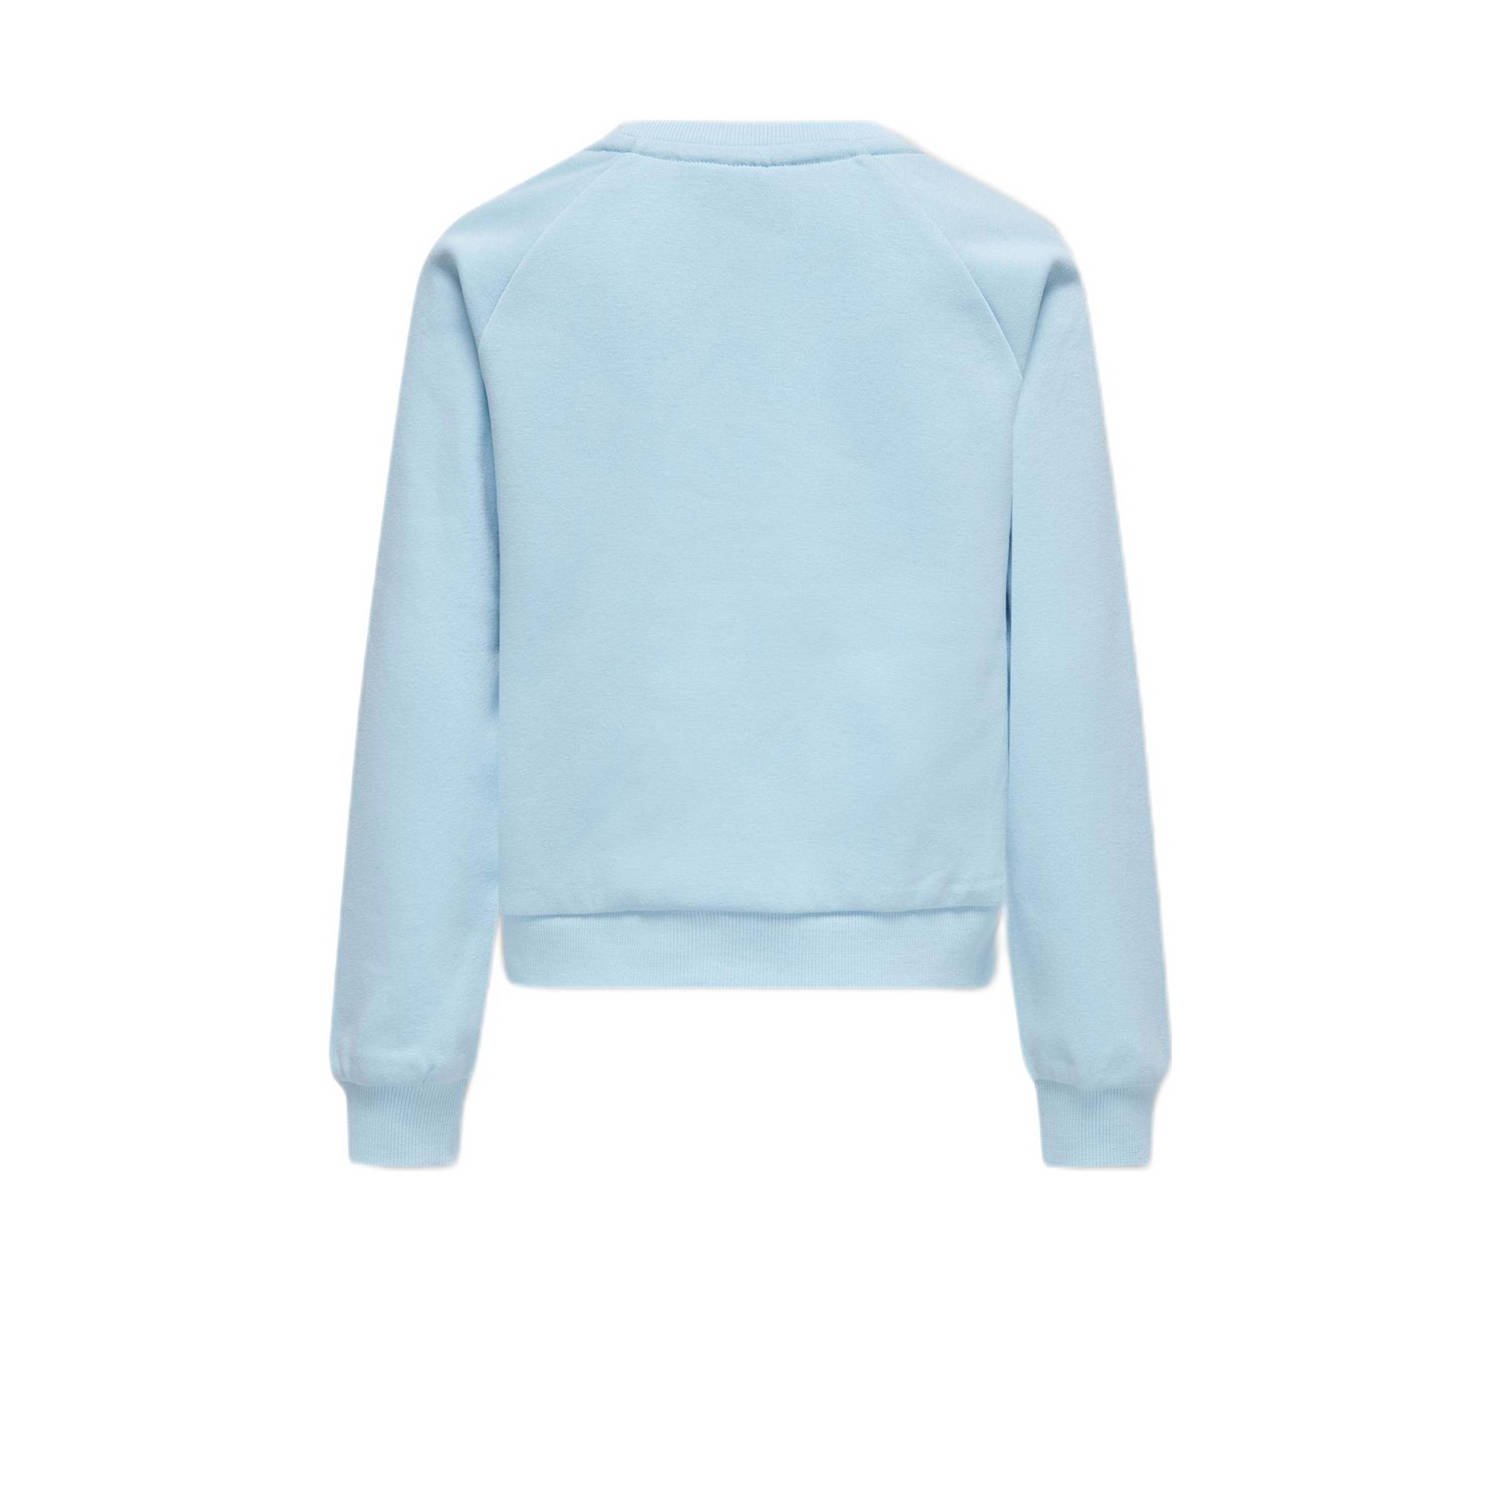 ONLY KIDS GIRL sweater KOGGOLDIE met tekst lichtblauw